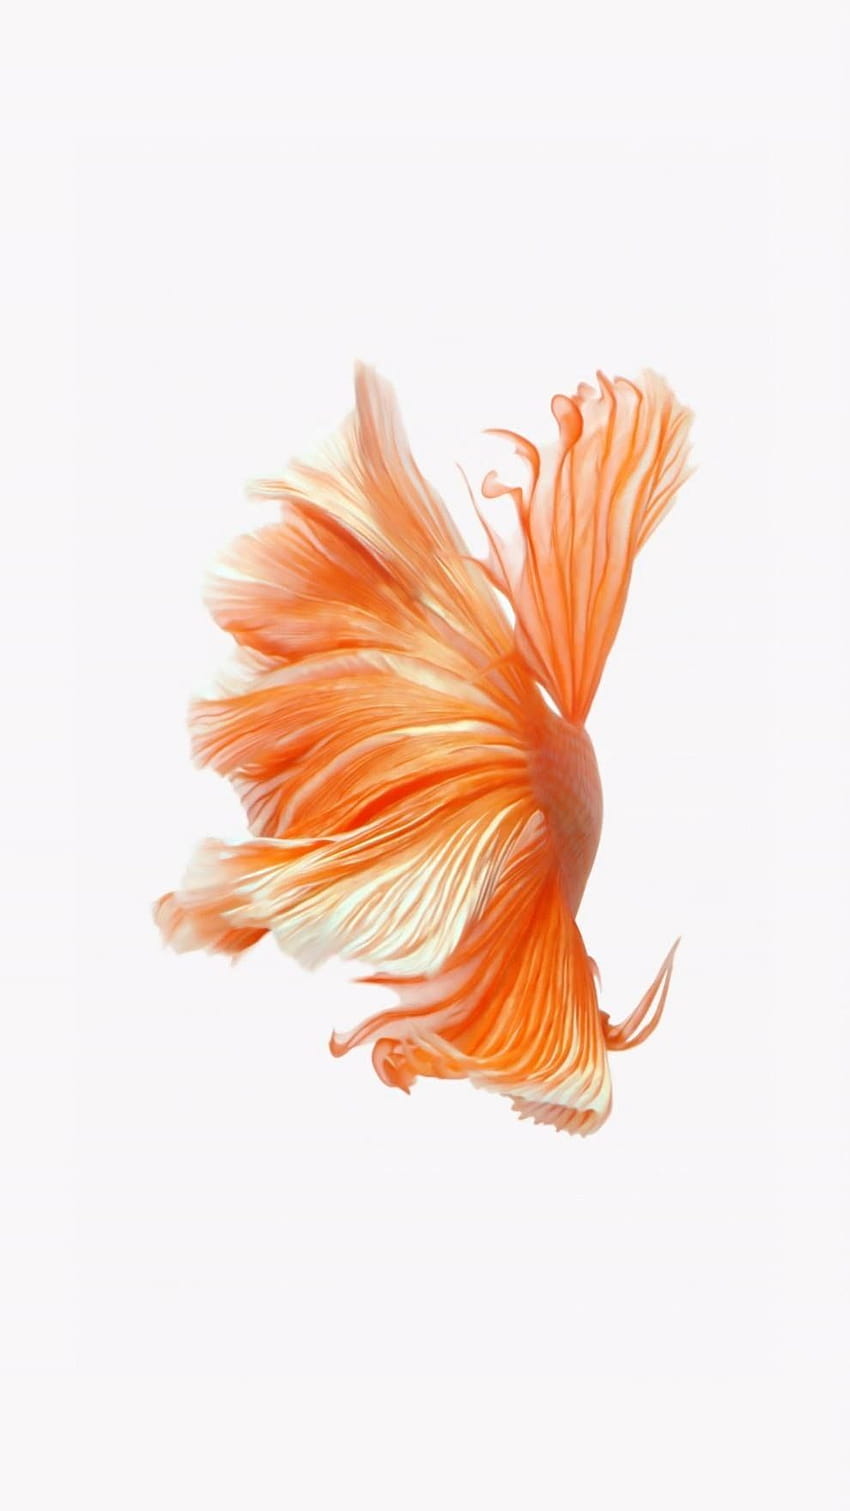 Fish iPhone: Bạn muốn trang trí điện thoại của mình độc đáo và đầy màu sắc? Bức ảnh về cá trên nền hình nước xanh sẽ đem đến cho bạn sự tươi sáng và năng động. Không chỉ mang lại vẻ đẹp cho thiết bị, bức ảnh còn giúp bạn thể hiện tình yêu của mình với động vật dưới nước.